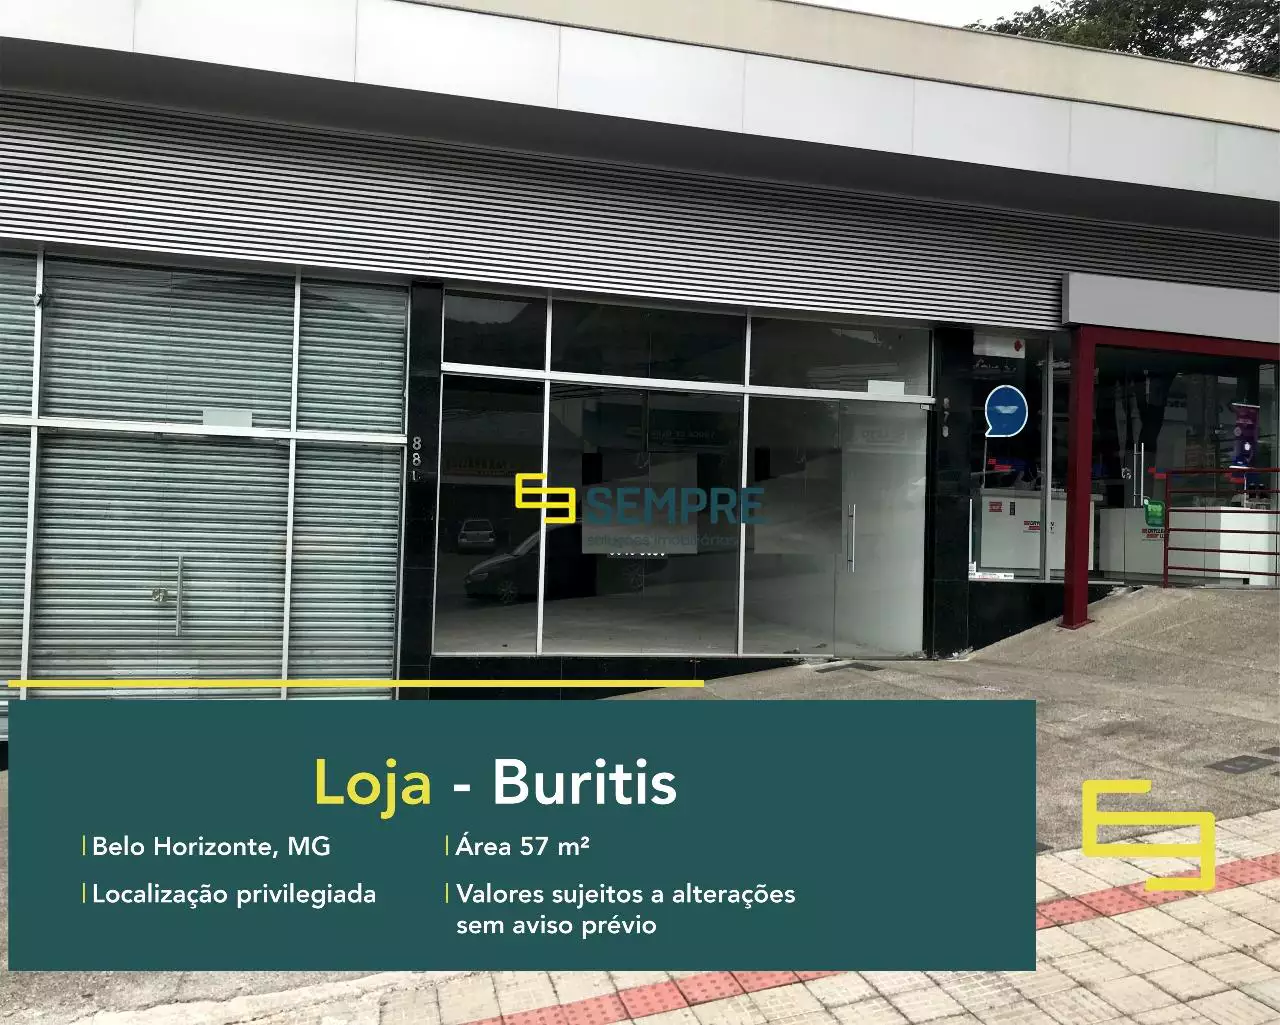 Loja para locação no bairro Buritis em BH, em excelente localização. O estabelecimento comercial conta com área de 57,20 m².